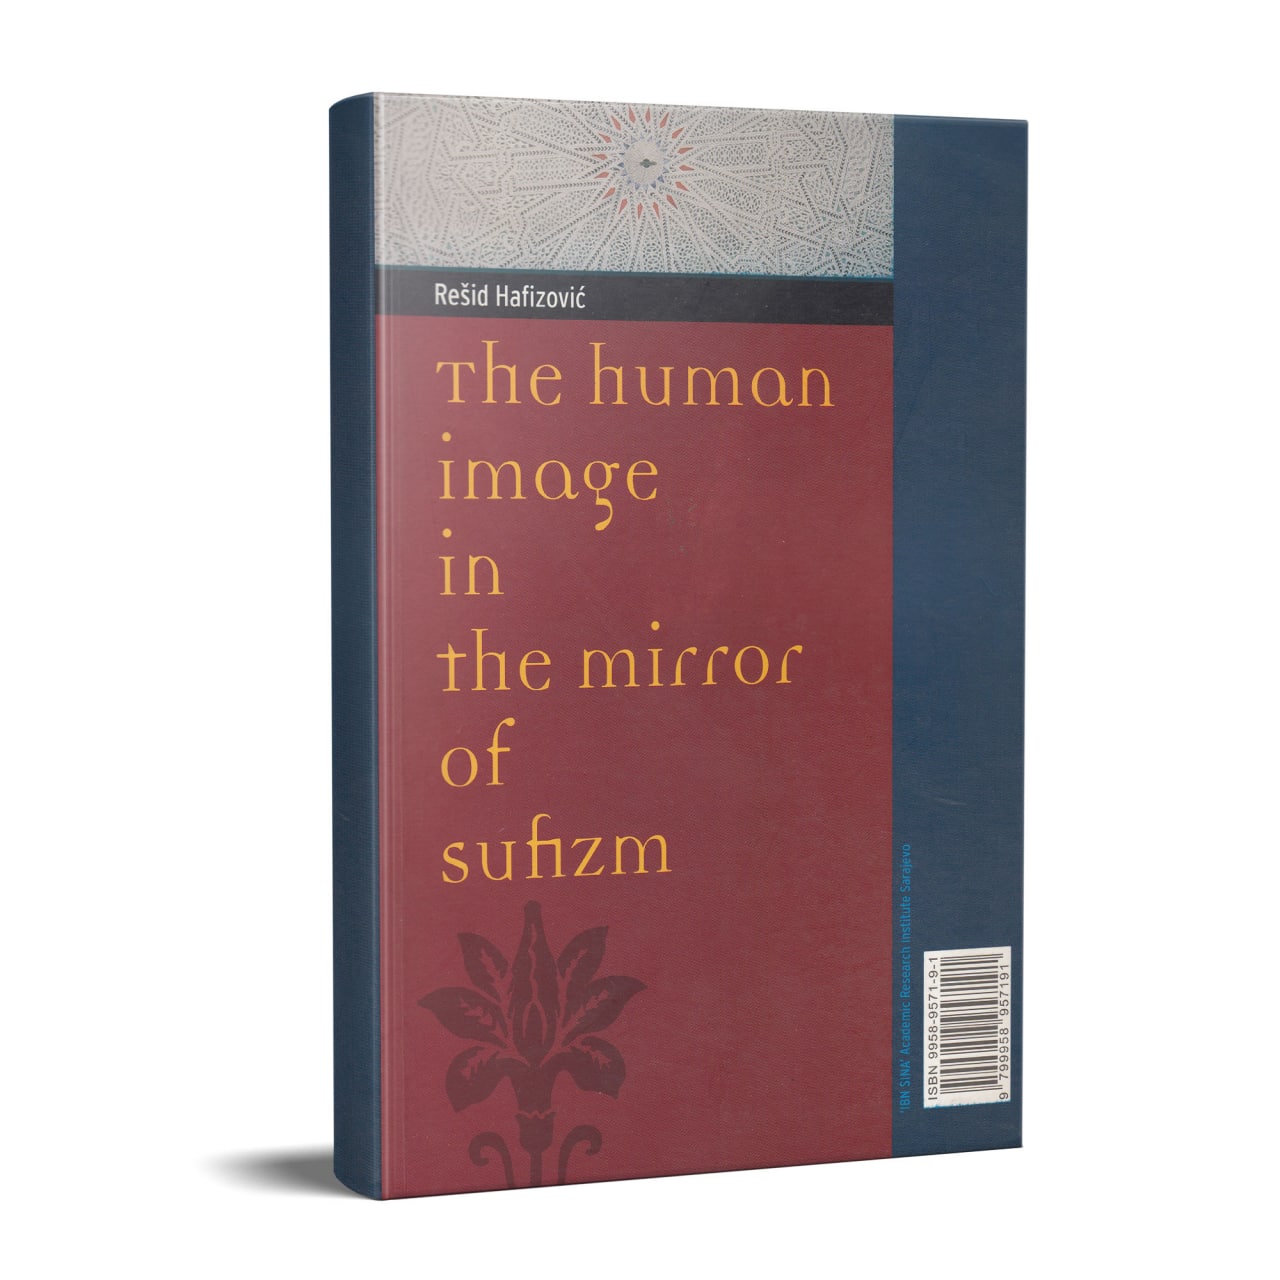 Ljudsko lice u ogledalu sufijske literature